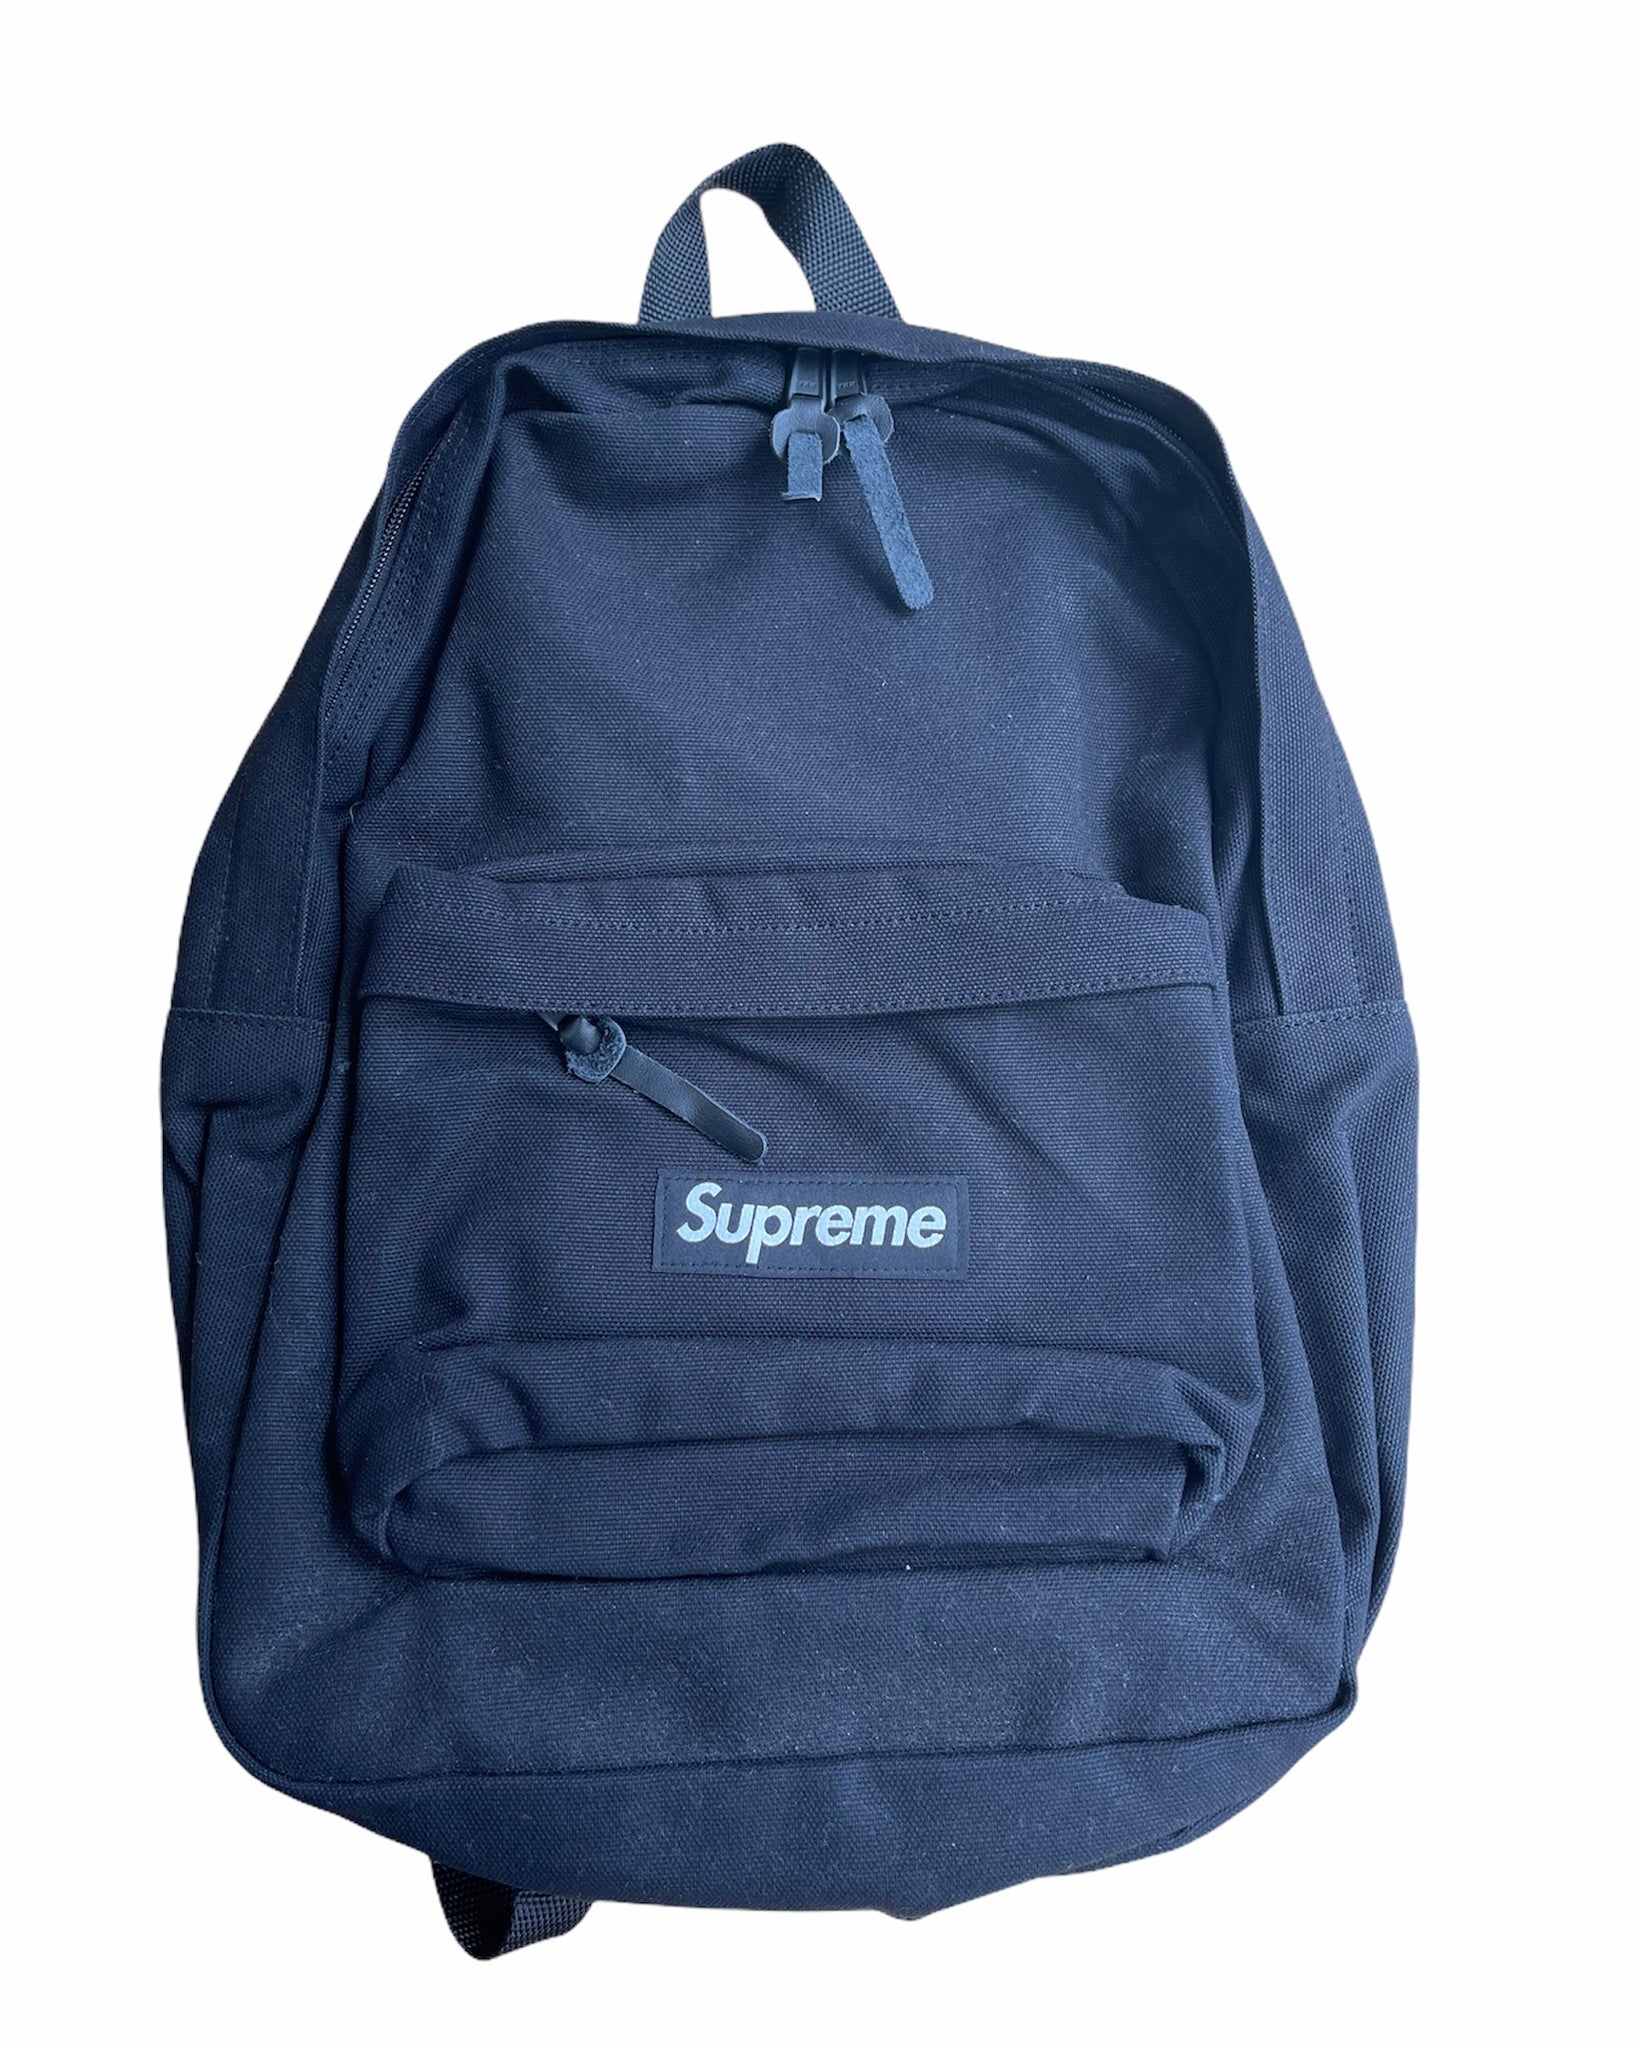 Supreme Canvas Backpack "Black"